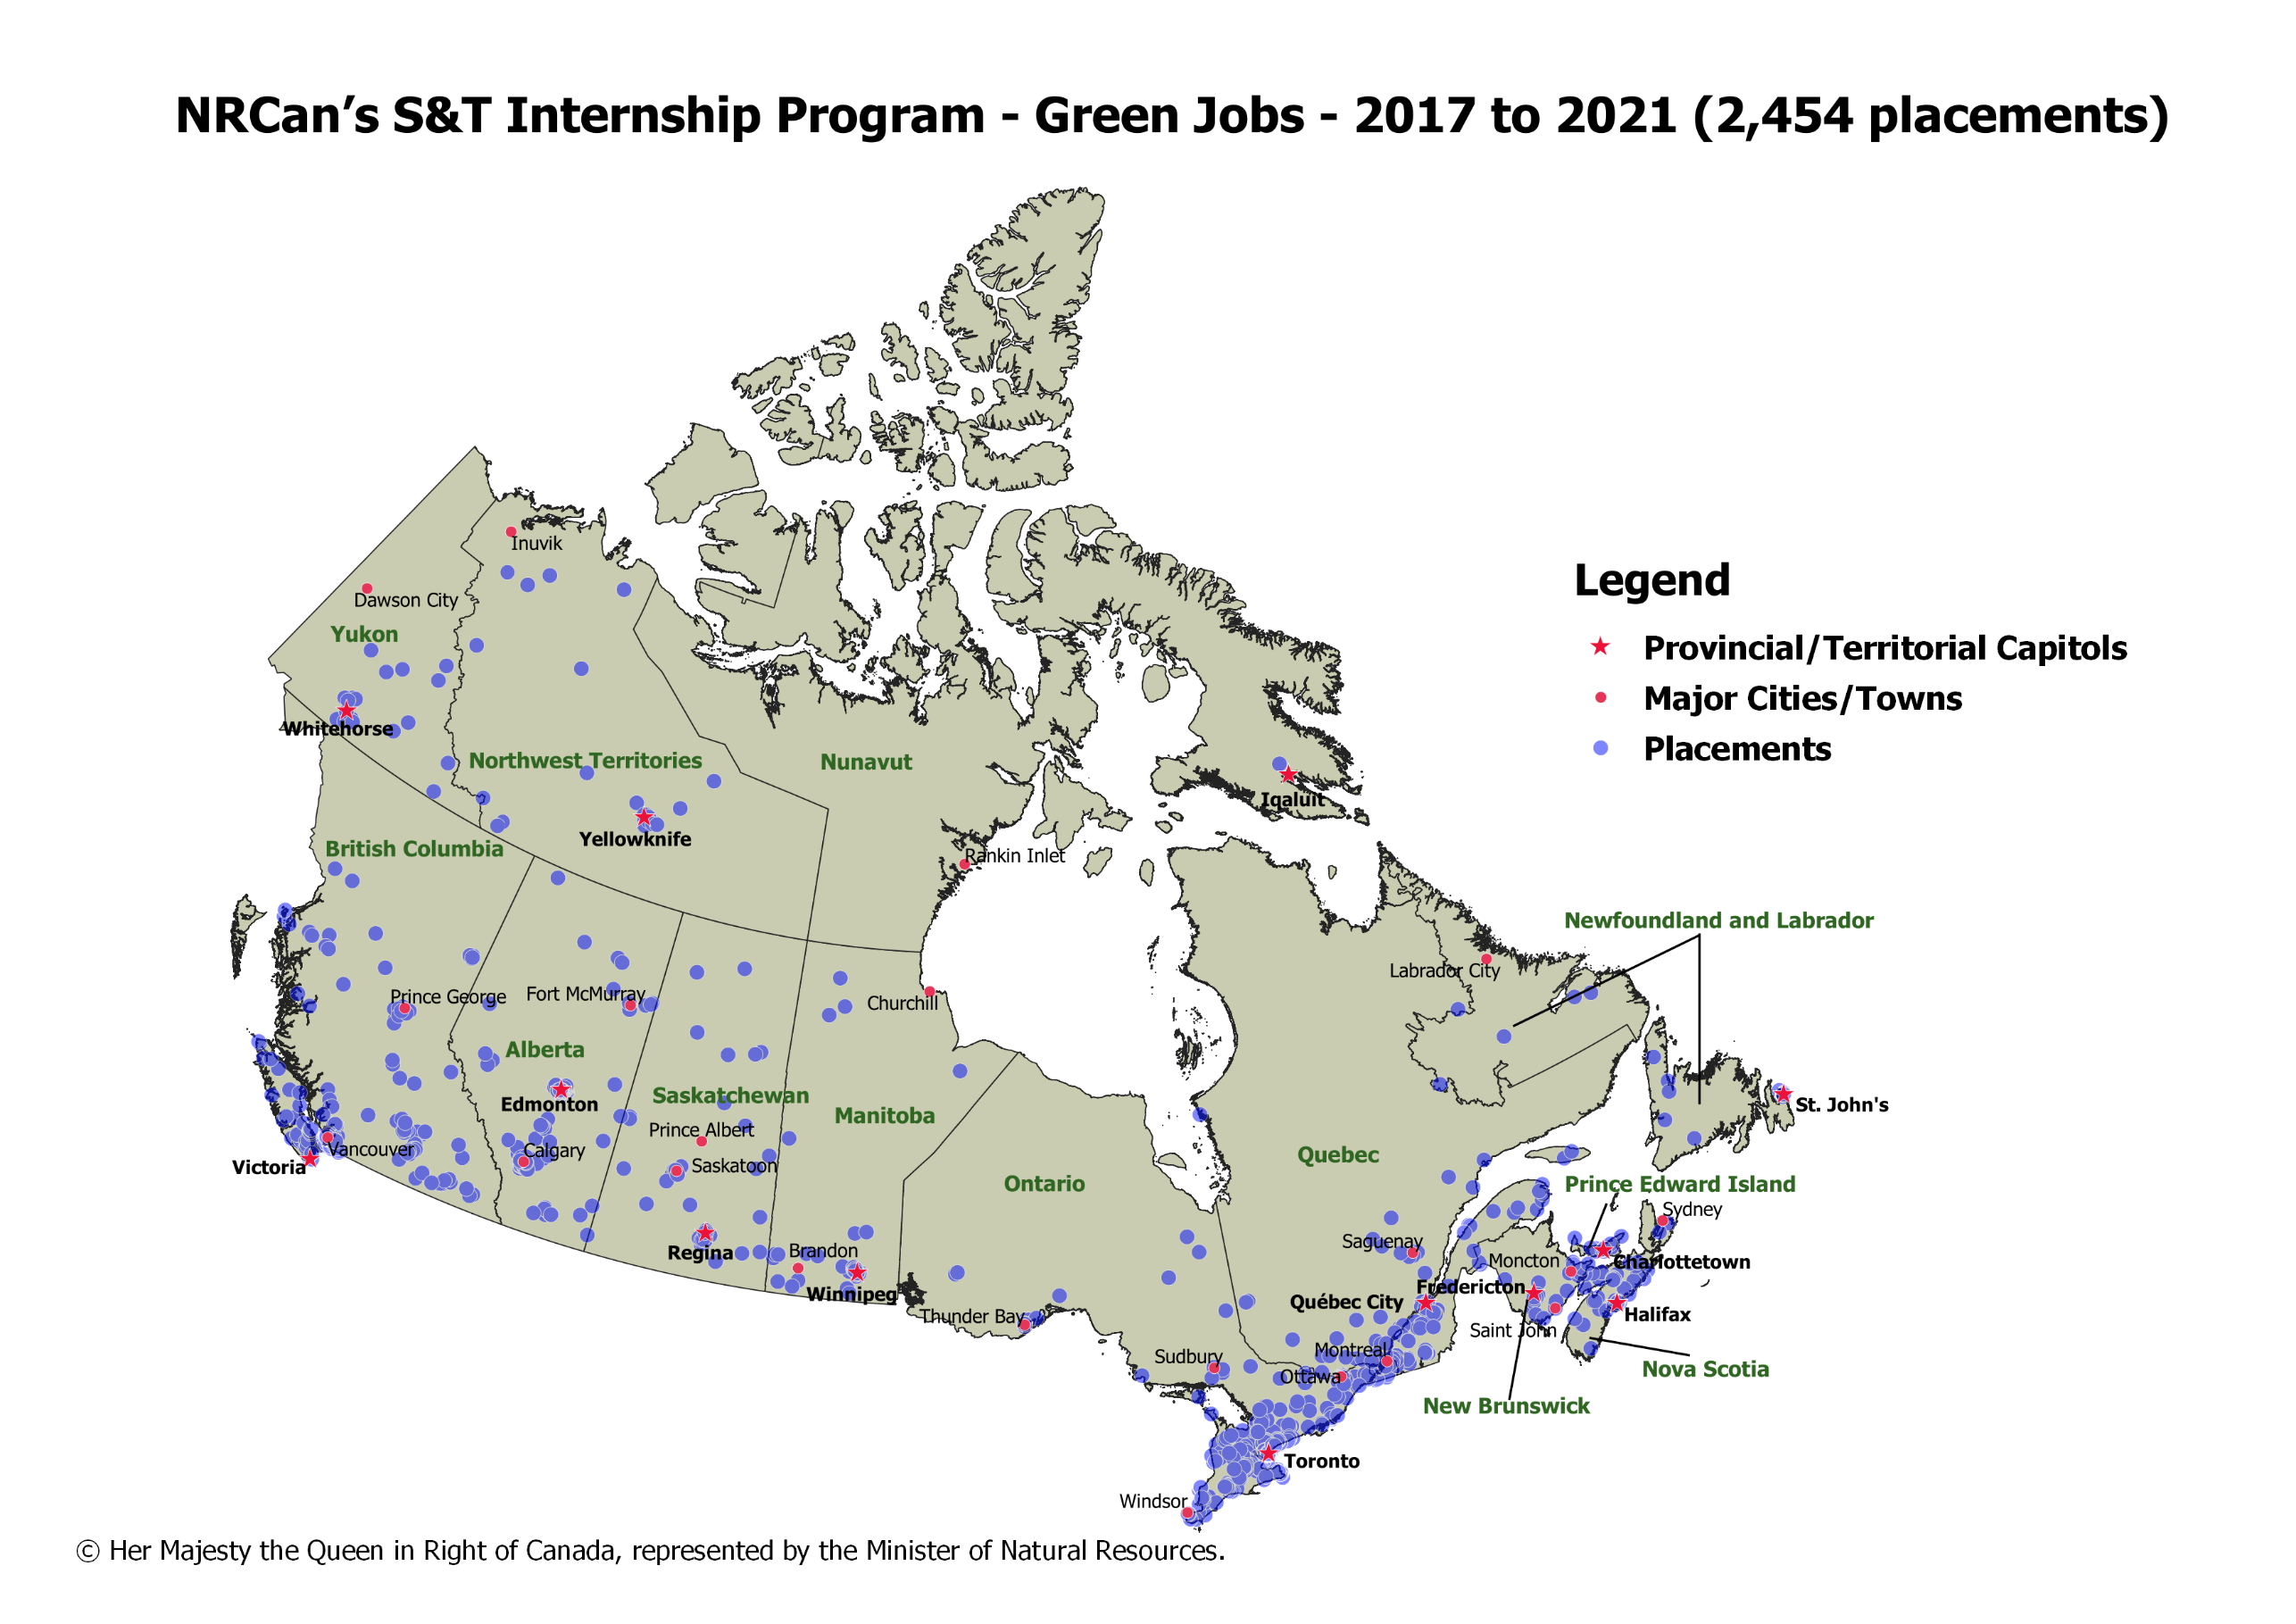 Carte du Canada montrant les placements d'emplois verts de RNCan dans le cadre du Programme de stages en sciences et technologie